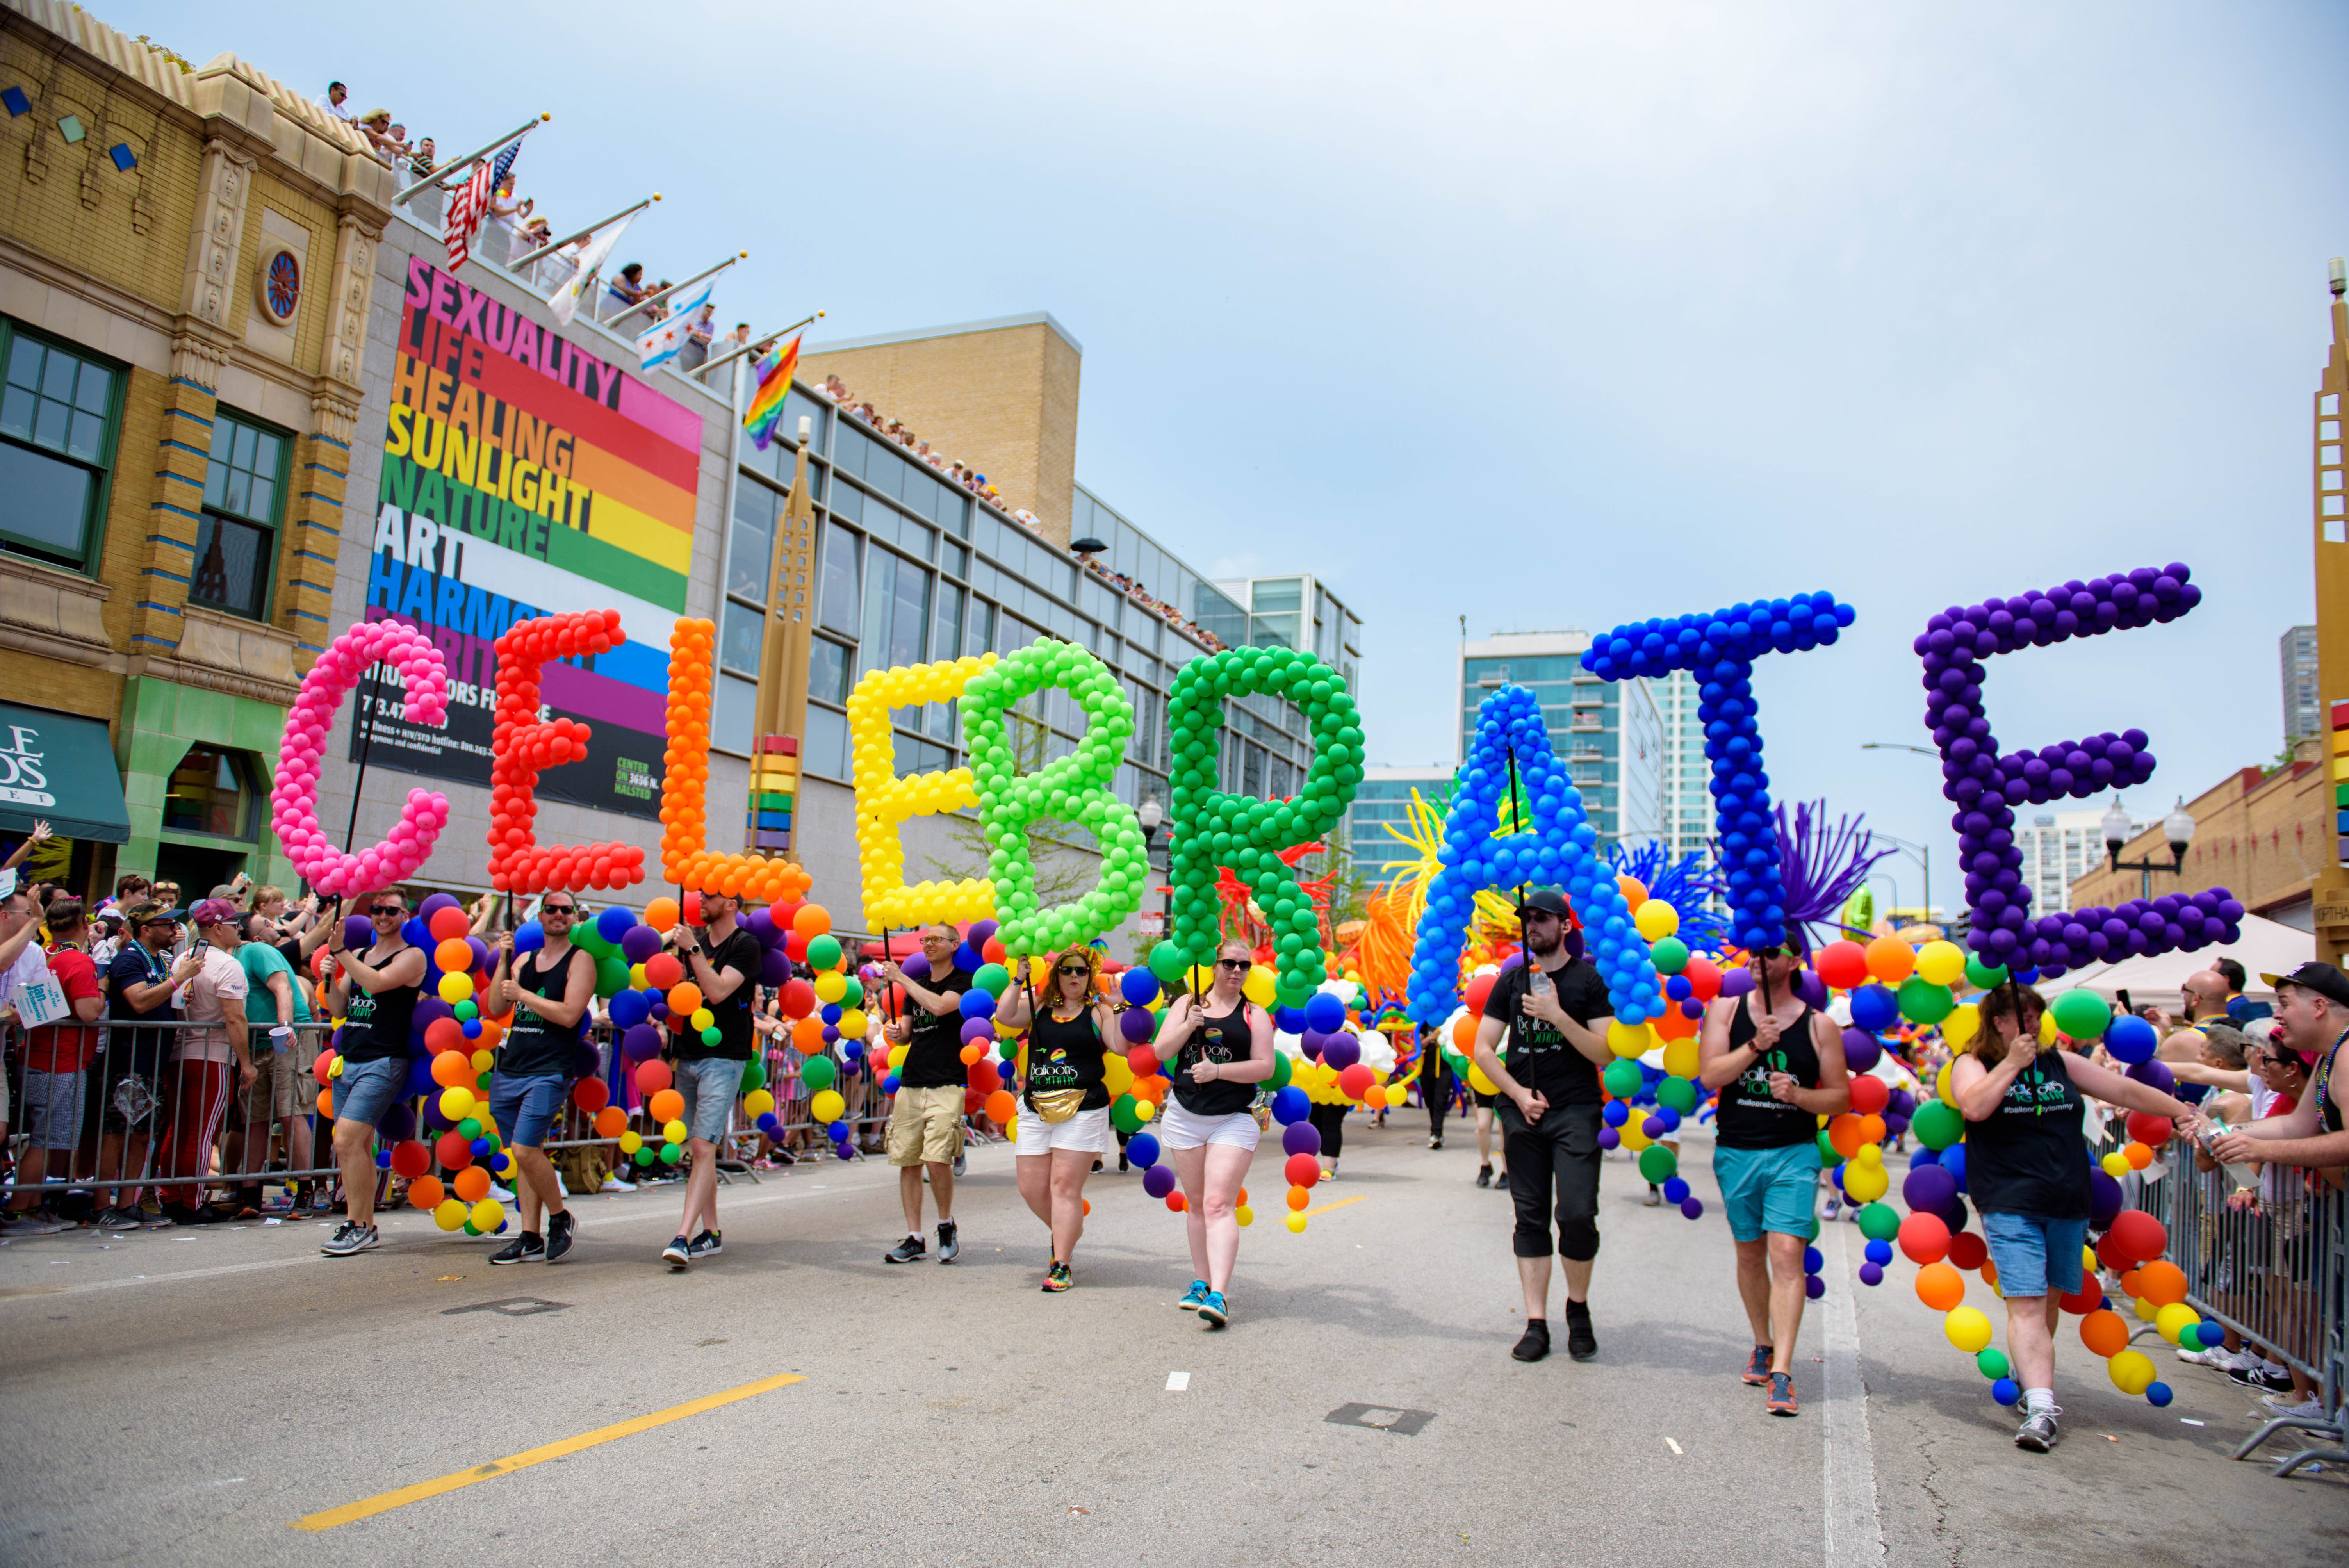 Pridefest, Taste of Randolph, Gold Coast Art Fair – NBC Chicago